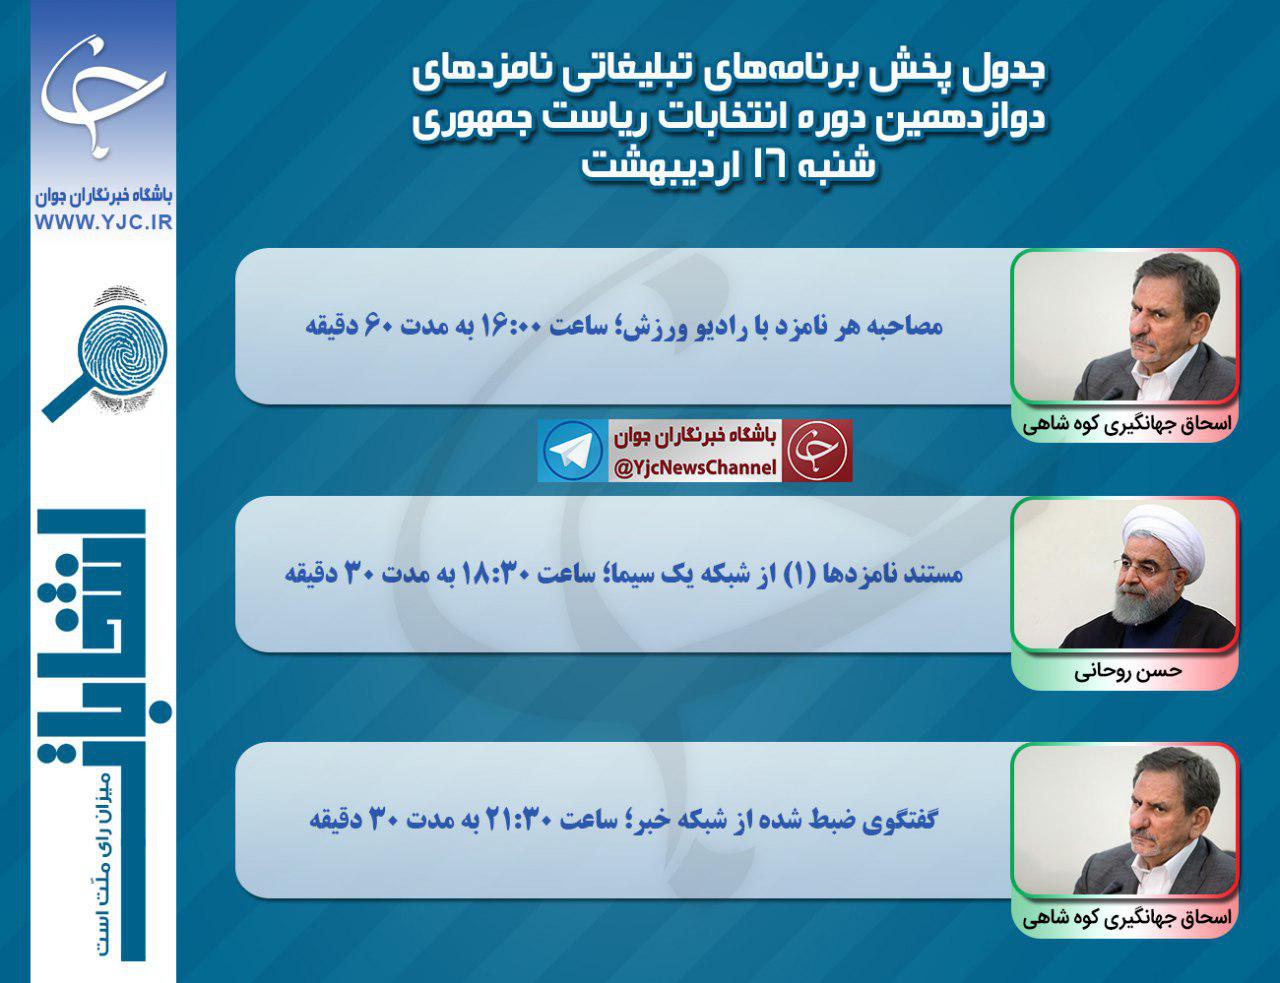 برنامه 2 نامزد انتخابات ریاست جمهوری (روحانی و جهانگیری) مصاحبه و مناظره شنبه 16 اردیبهشت ماه